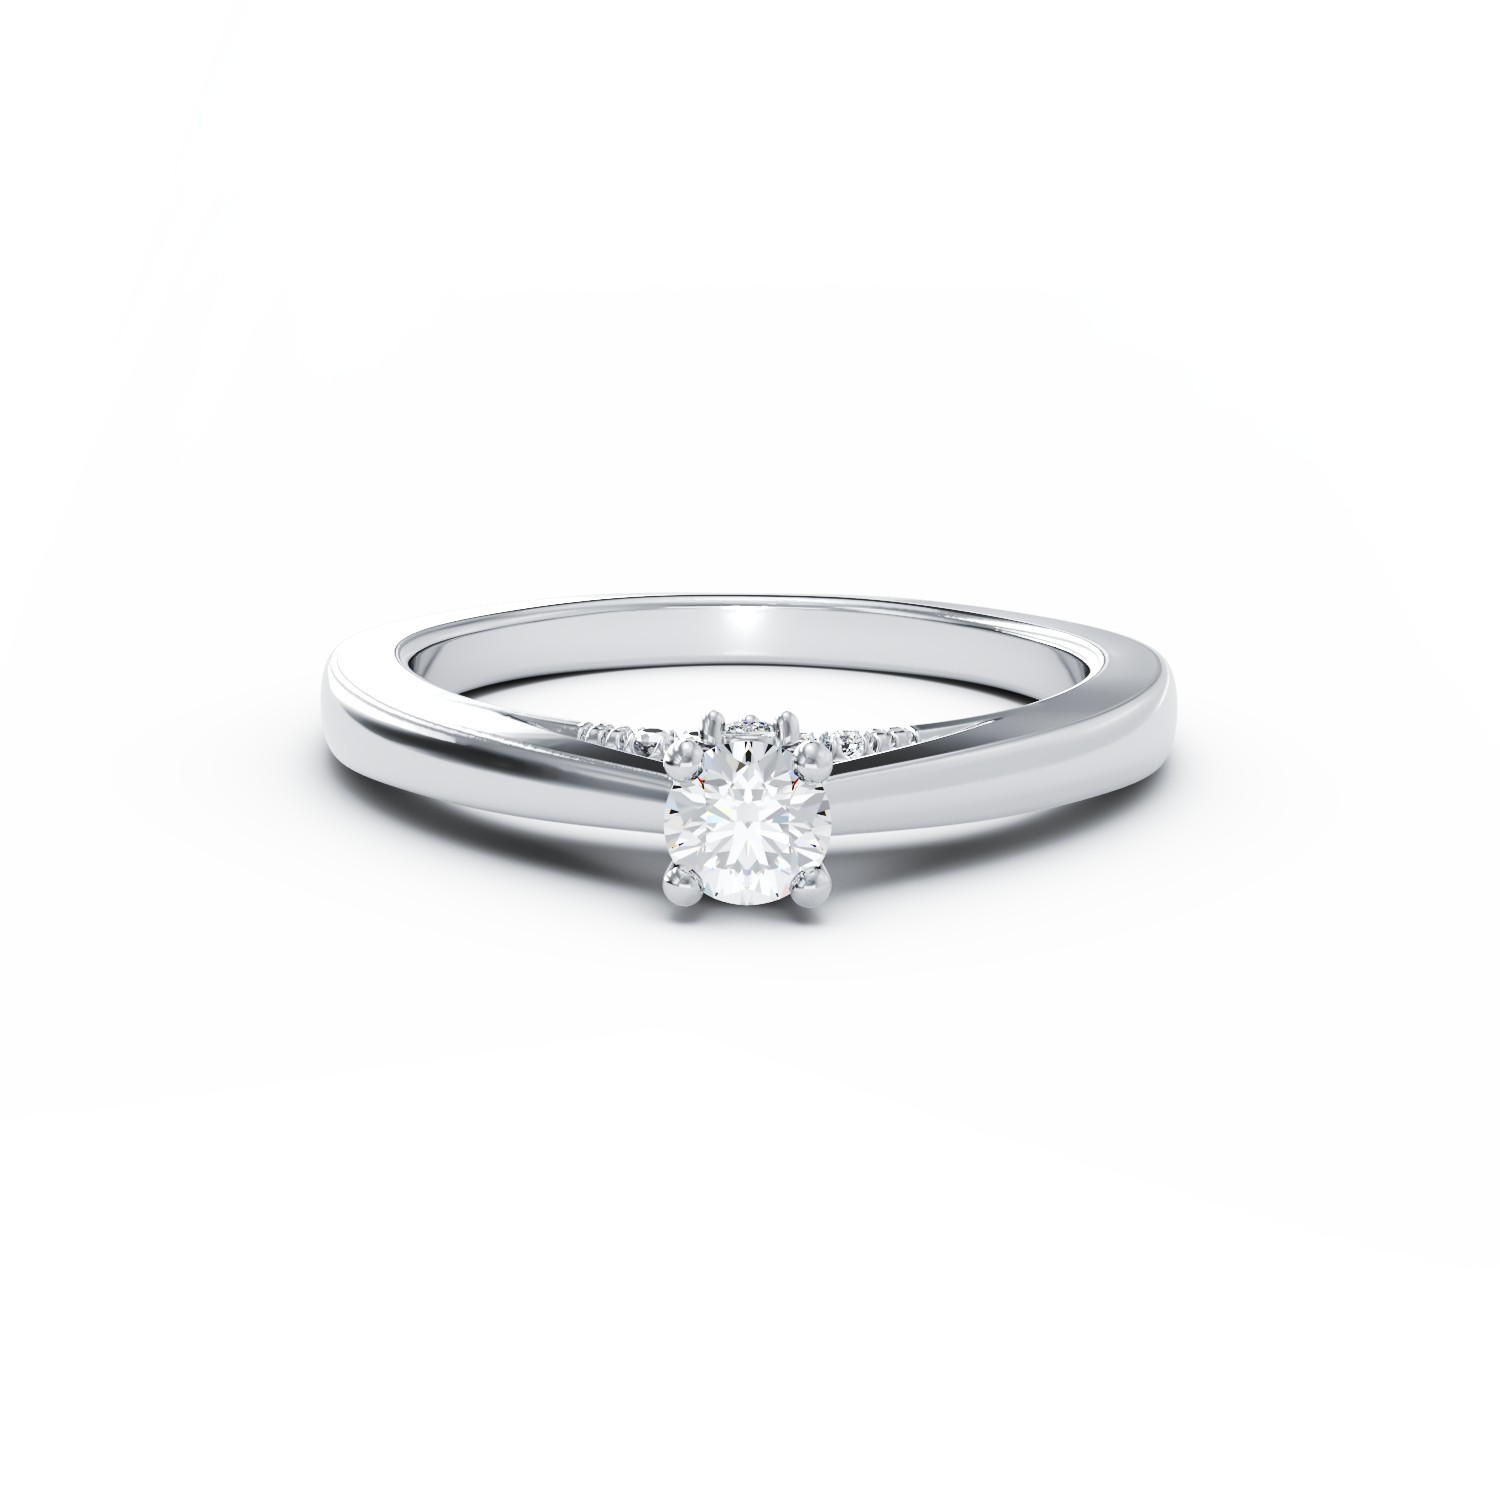 Eljegyzési gyűrű 18K-os fehér aranyból 0,31ct gyémánttal és 0,04ct gyémántokkal. Gramm: 2,97